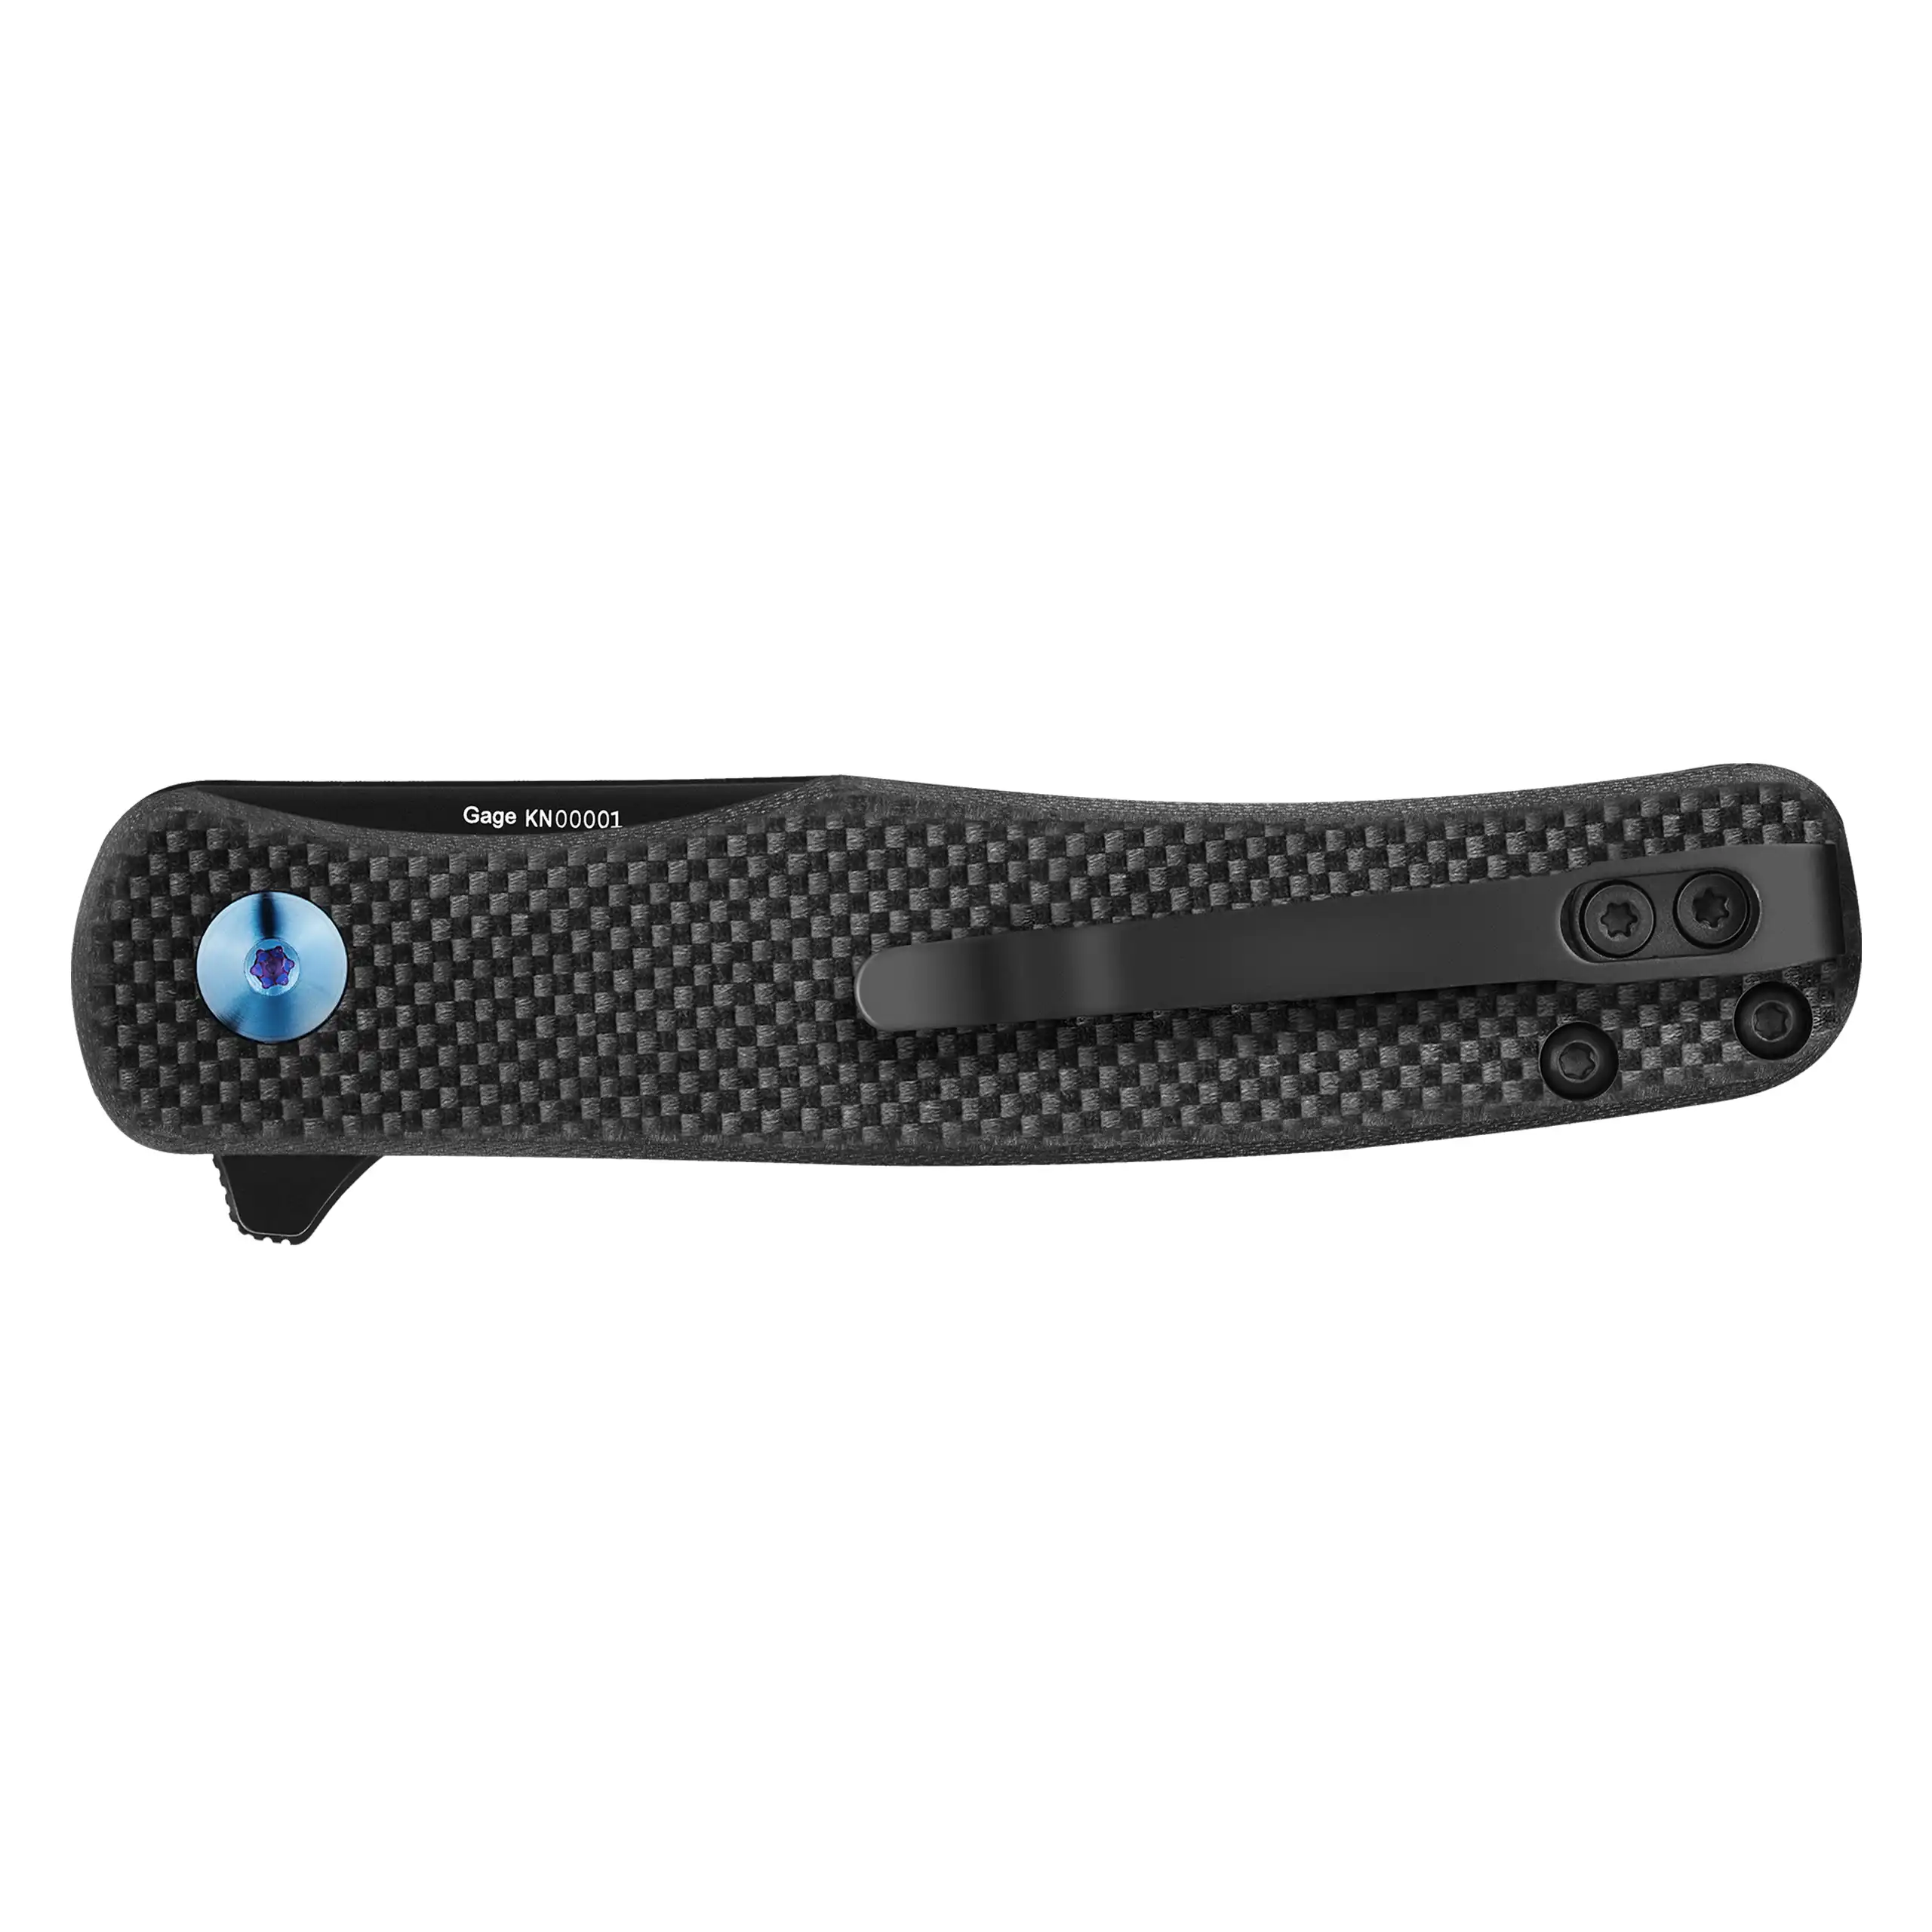 OKNIFE Mini Chital Einhand-Taschenmesser mit Pocketclip ( 69.9 mm Klingenlänge) 